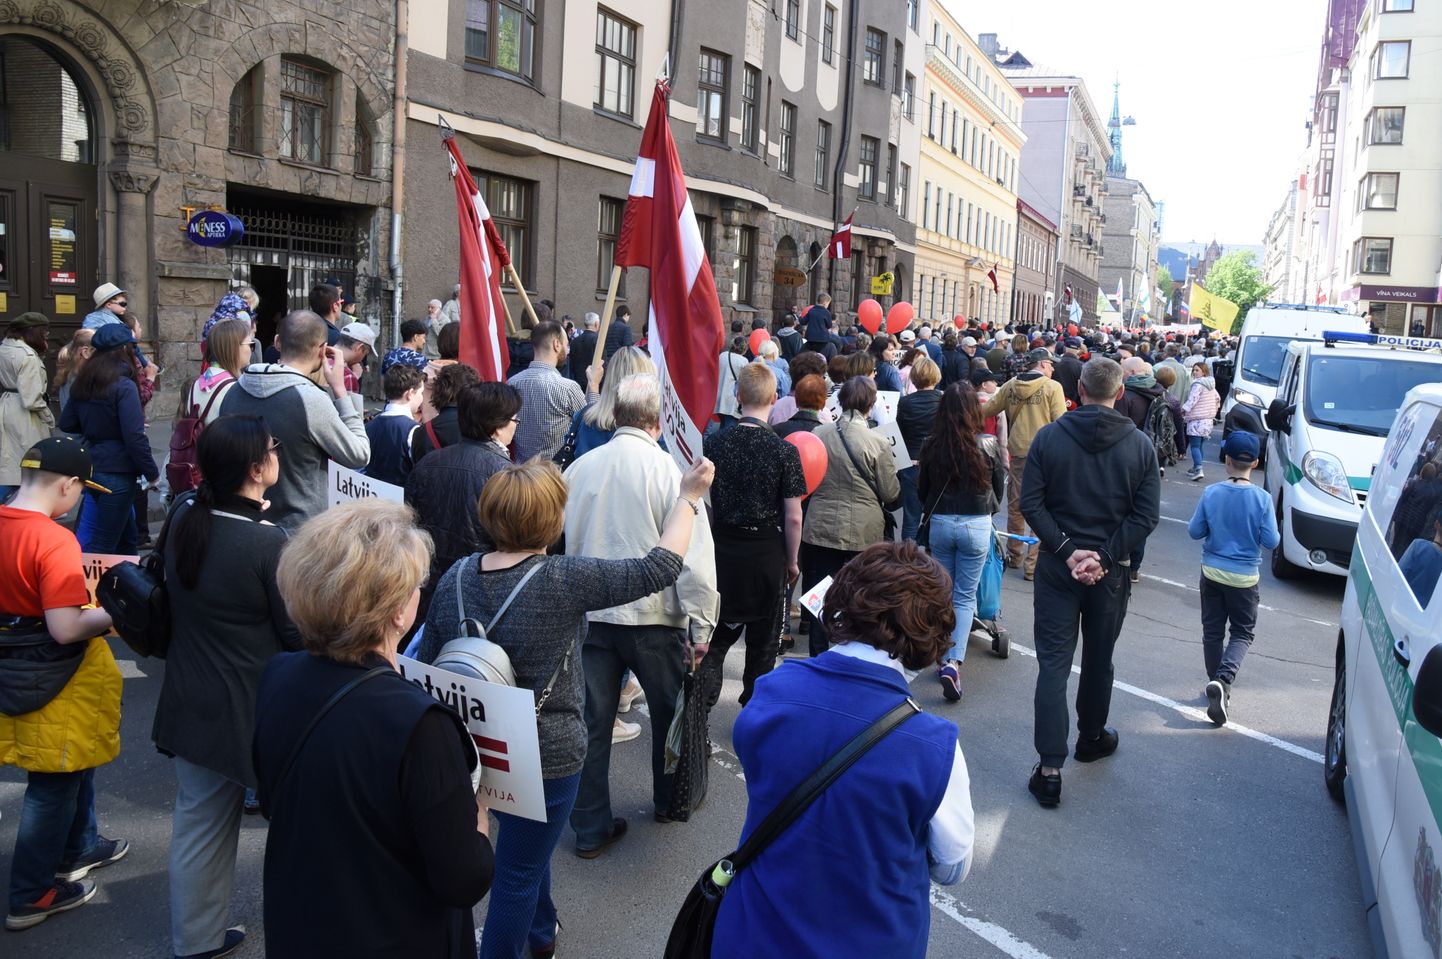 2019. gada 1. maijs. Latvijas Krievu savienība organizē protesta pasākumu, lai prasītu Latvijā nodrošināt sociālo taisnīgumu un krievu skolu pastāvēšanu Latvijā.